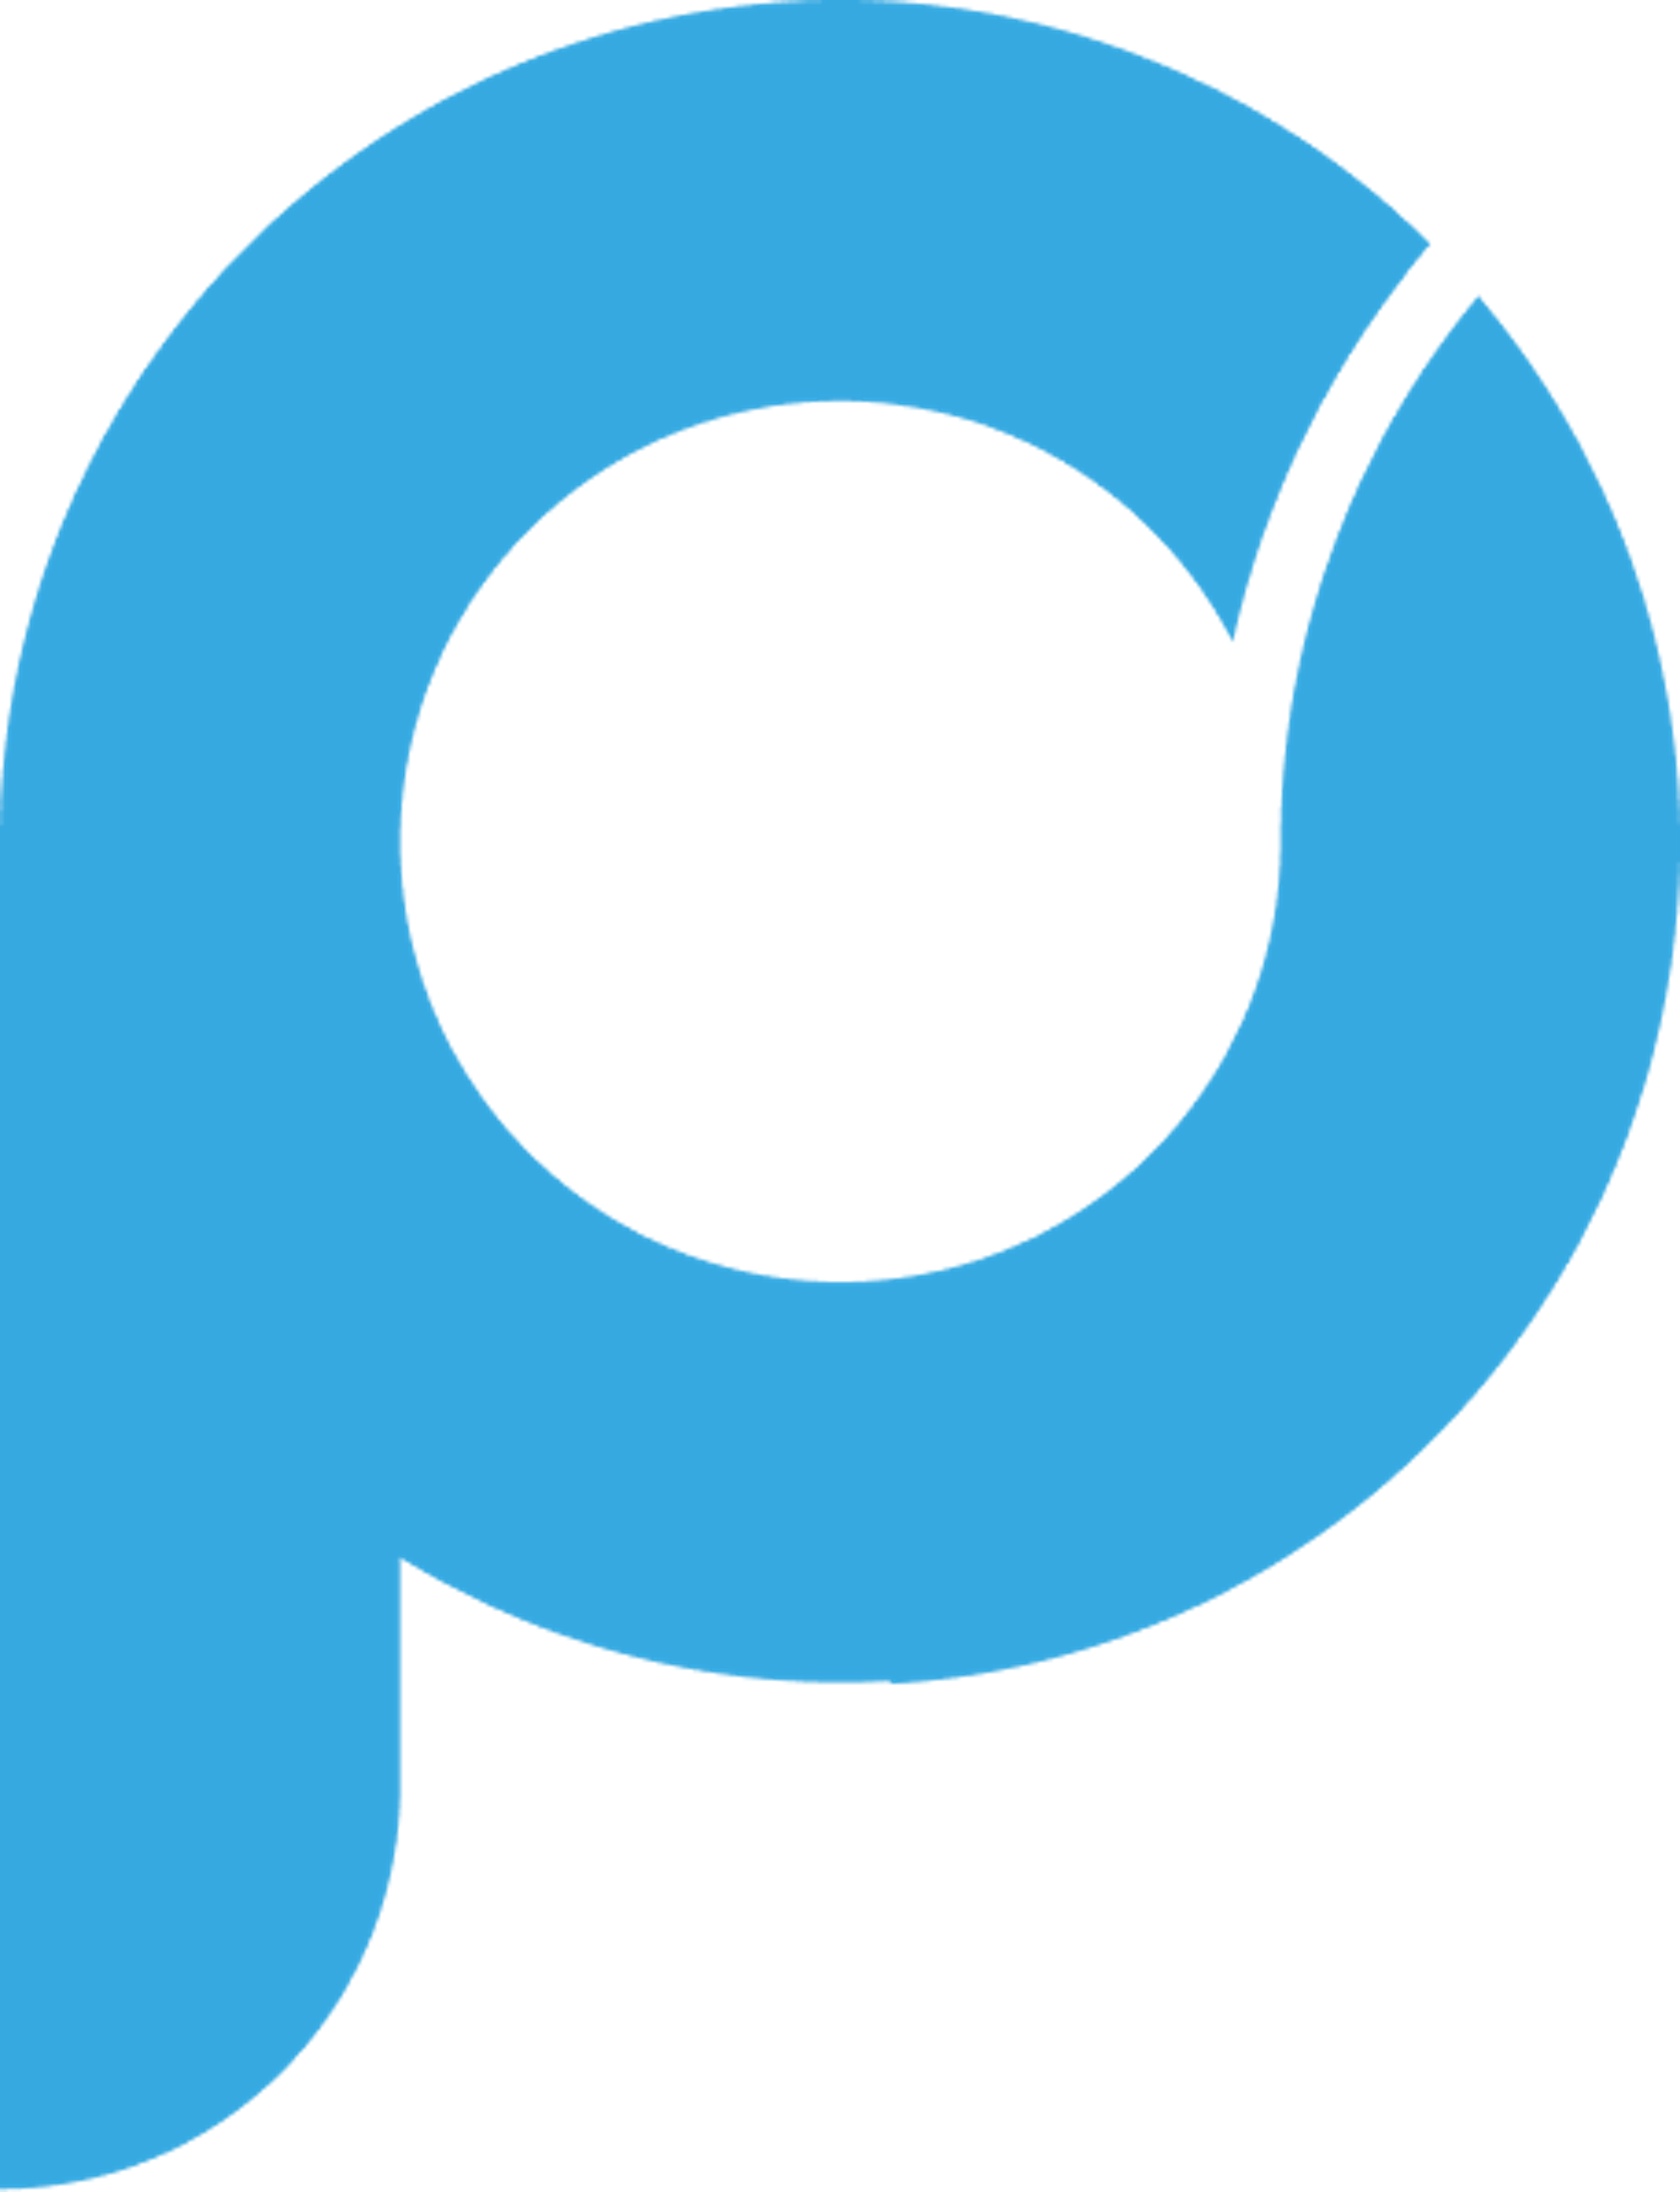 Proggio Logo